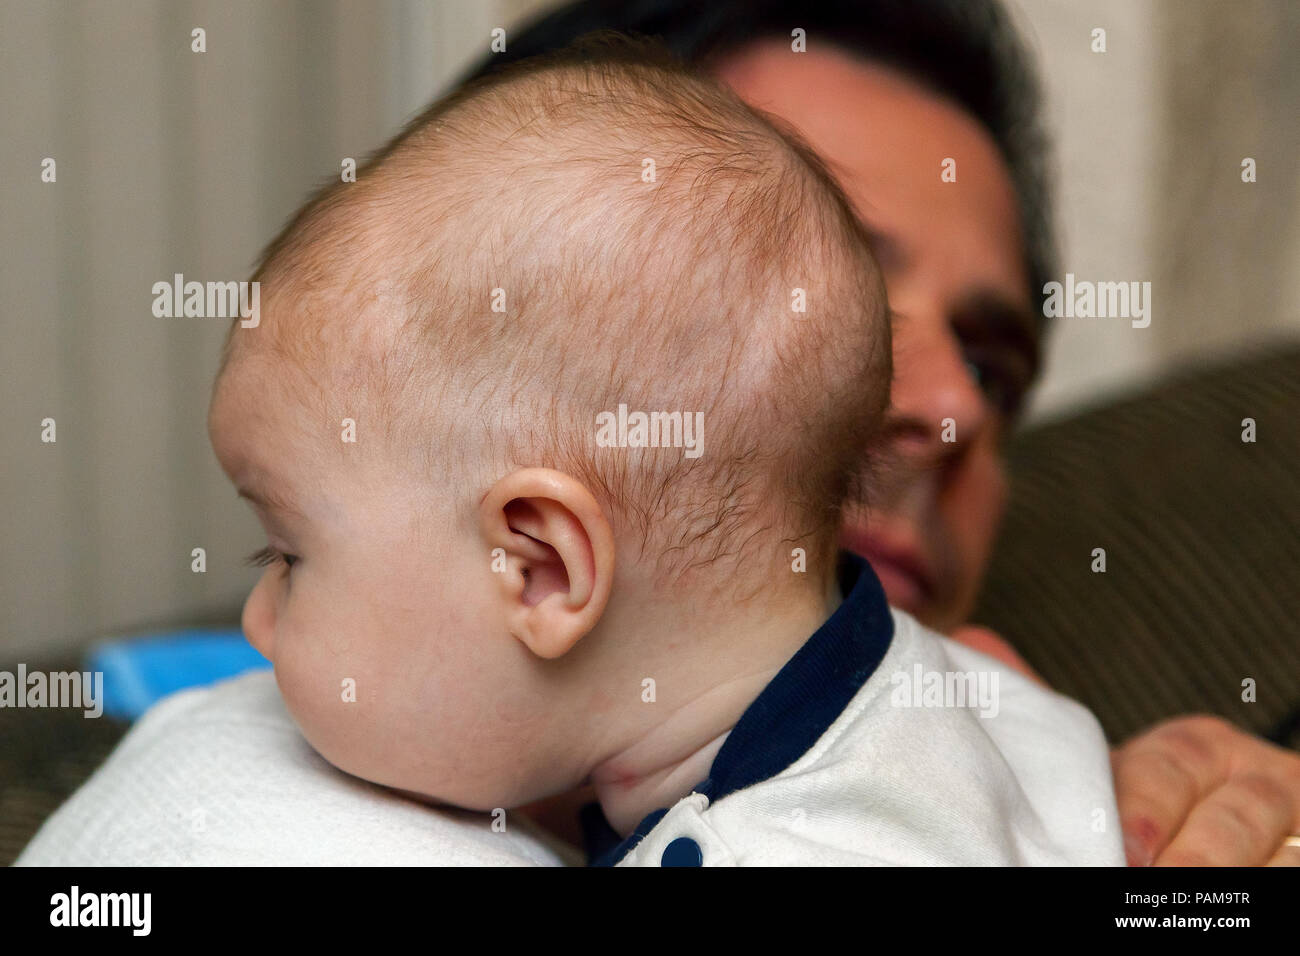 Schließen Sie herauf Bild eines Kindes mit einer möglichen Diagnose von Craniosynostosis. Er wird von seinem betroffenen Vater getröstet. Er tat es nicht. Stockfoto